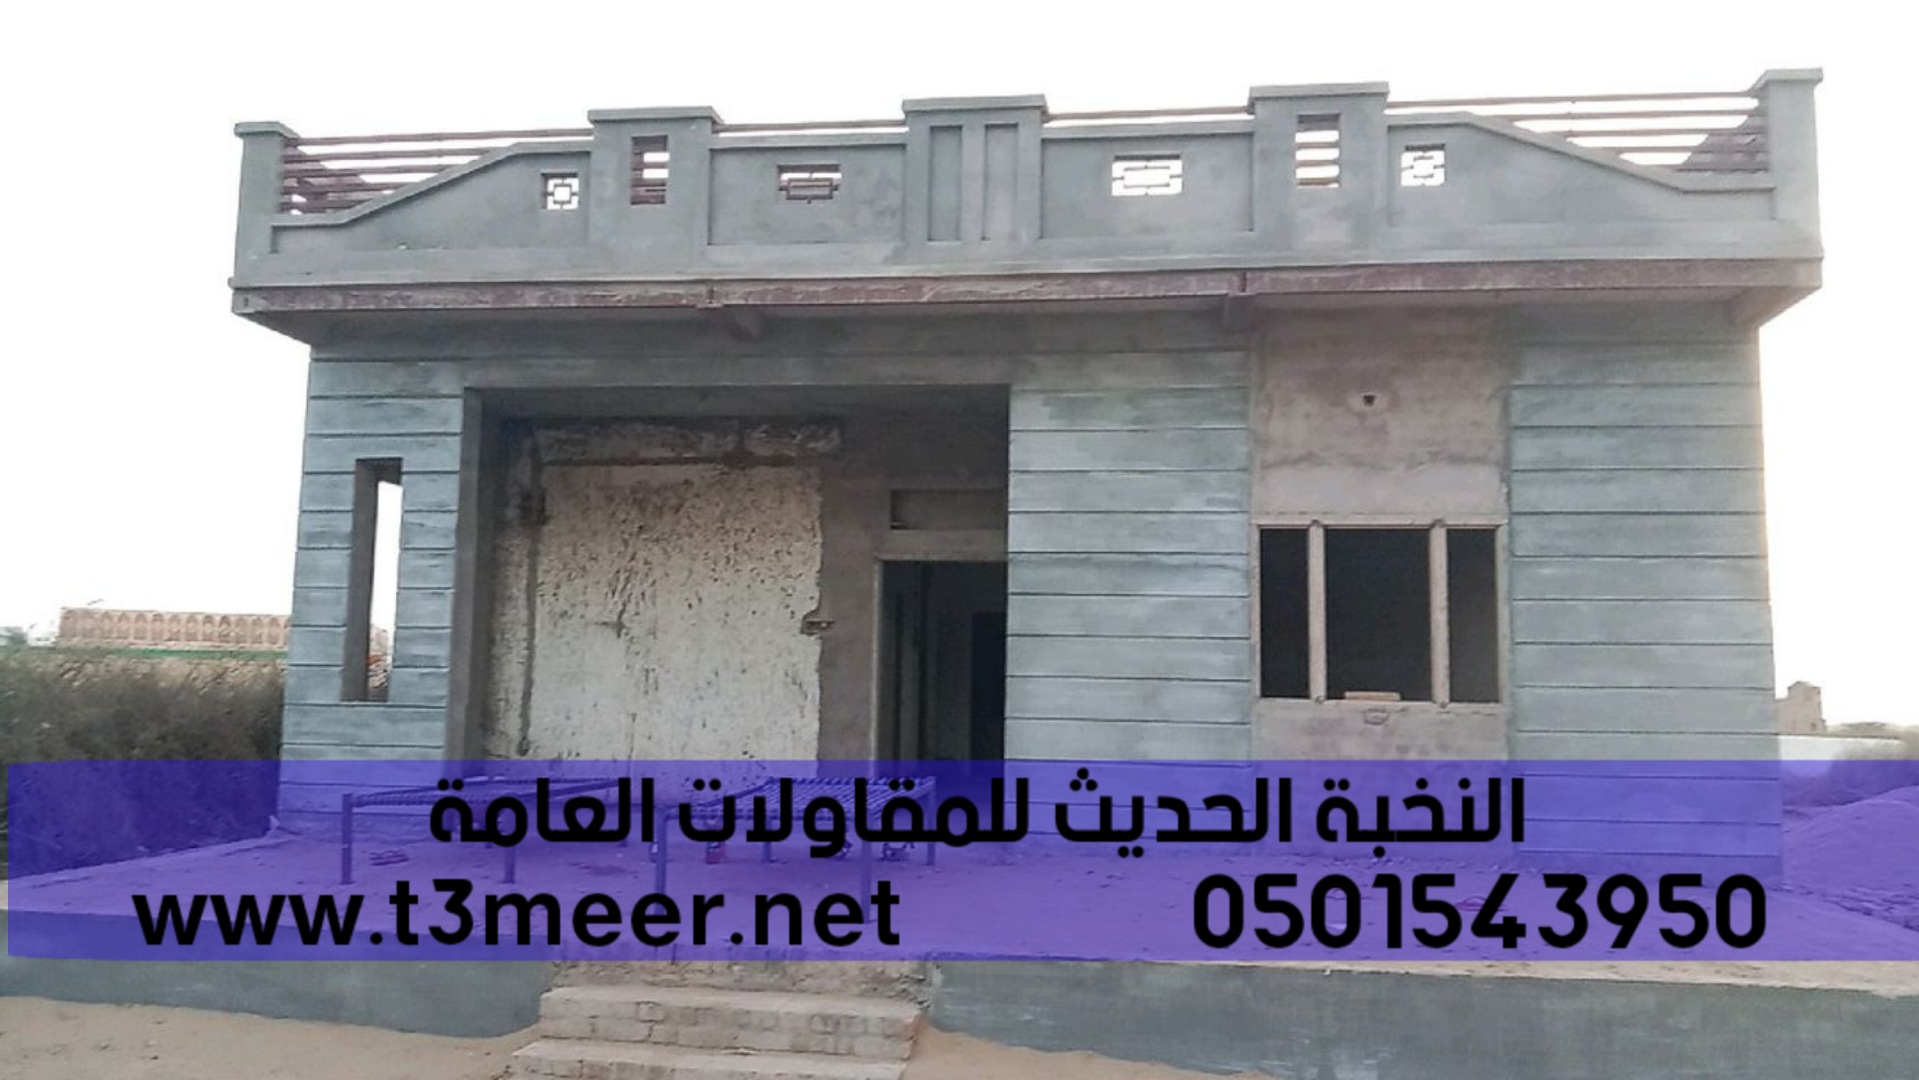 افضل مؤسسة بناء ترميم تشطيب مباني في جدة , 0501543950